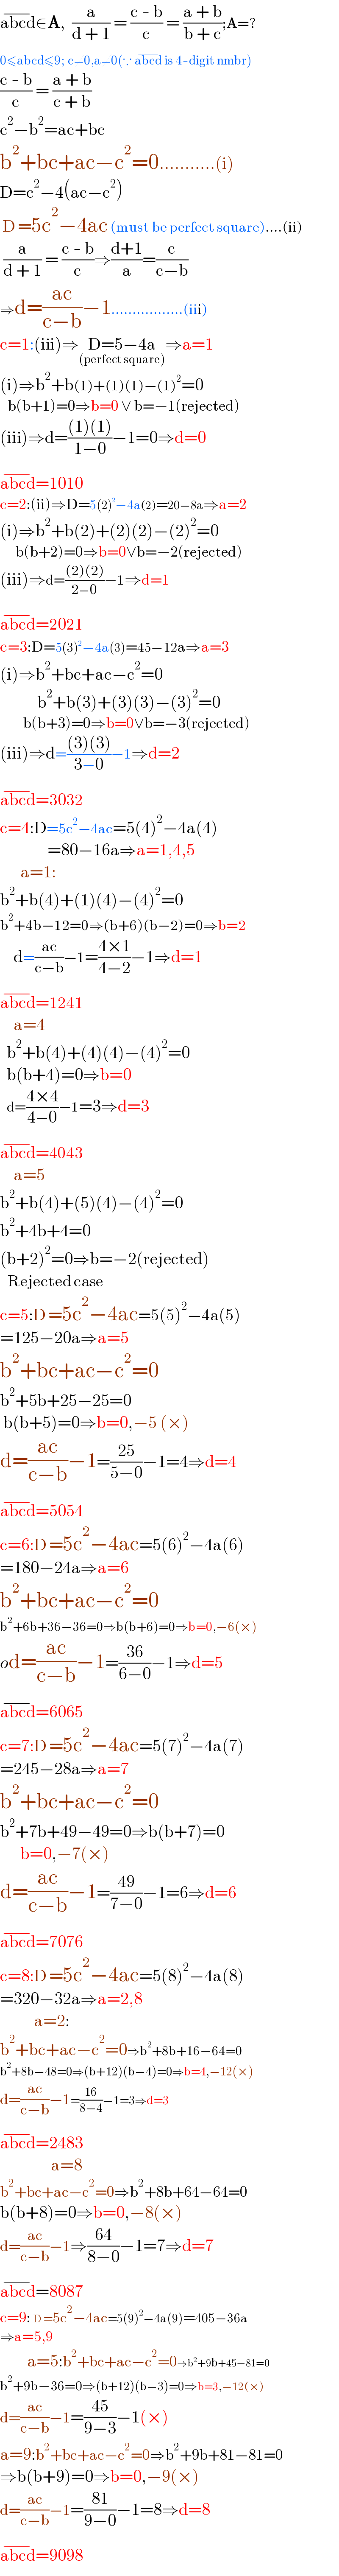 abcd^(−) ∈A,  (a/(d + 1)) = ((c - b)/c) = ((a + b)/(b + c));A=?  0≤abcd≤9; c≠0,a≠0(∵ abcd^(−)  is 4-digit nmbr)  ((c - b)/c) = ((a + b)/(c + b))  c^2 −b^2 =ac+bc  b^2 +bc+ac−c^2 =0...........(i)  D=c^2 −4(ac−c^2 )   D =5c^2 −4ac (must be perfect square)....(ii)   (a/(d + 1)) = ((c - b)/c)⇒((d+1)/a)=(c/(c−b))  ⇒d=((ac)/(c−b))−1.................(iii)  c=1:(iii)⇒D=5−4a_((perfect square)) ⇒a=1  (i)⇒b^2 +b(1)+(1)(1)−(1)^2 =0     b(b+1)=0⇒b=0 ∨ b=−1(rejected)  (iii)⇒d=(((1)(1))/(1−0))−1=0⇒d=0  abcd^(−) =1010  c=2:(ii)⇒D=5(2)^2 −4a(2)=20−8a⇒a=2  (i)⇒b^2 +b(2)+(2)(2)−(2)^2 =0        b(b+2)=0⇒b=0∨b=−2(rejected)  (iii)⇒d=(((2)(2))/(2−0))−1⇒d=1  abcd^(−) =2021  c=3:D=5(3)^2 −4a(3)=45−12a⇒a=3  (i)⇒b^2 +bc+ac−c^2 =0             b^2 +b(3)+(3)(3)−(3)^2 =0           b(b+3)=0⇒b=0∨b=−3(rejected)  (iii)⇒d=(((3)(3))/(3−0))−1⇒d=2  abcd^(−) =3032  c=4:D=5c^2 −4ac=5(4)^2 −4a(4)                =80−16a⇒a=1,4,5        a=1:  b^2 +b(4)+(1)(4)−(4)^2 =0  b^2 +4b−12=0⇒(b+6)(b−2)=0⇒b=2      d=((ac)/(c−b))−1=((4×1)/(4−2))−1⇒d=1  abcd^(−) =1241      a=4    b^2 +b(4)+(4)(4)−(4)^2 =0    b(b+4)=0⇒b=0    d=((4×4)/(4−0))−1=3⇒d=3  abcd^(−) =4043      a=5      b^2 +b(4)+(5)(4)−(4)^2 =0  b^2 +4b+4=0  (b+2)^2 =0⇒b=−2(rejected)     Rejected case  c=5:D =5c^2 −4ac=5(5)^2 −4a(5)  =125−20a⇒a=5  b^2 +bc+ac−c^2 =0  b^2 +5b+25−25=0   b(b+5)=0⇒b=0,−5 (×)  d=((ac)/(c−b))−1=((25)/(5−0))−1=4⇒d=4  abcd^(−) =5054  c=6:D =5c^2 −4ac=5(6)^2 −4a(6)  =180−24a⇒a=6  b^2 +bc+ac−c^2 =0  b^2 +6b+36−36=0⇒b(b+6)=0⇒b=0,−6(×)  od=((ac)/(c−b))−1=((36)/(6−0))−1⇒d=5  abcd^(−) =6065  c=7:D =5c^2 −4ac=5(7)^2 −4a(7)  =245−28a⇒a=7  b^2 +bc+ac−c^2 =0  b^2 +7b+49−49=0⇒b(b+7)=0        b=0,−7(×)  d=((ac)/(c−b))−1=((49)/(7−0))−1=6⇒d=6  abcd^(−) =7076  c=8:D =5c^2 −4ac=5(8)^2 −4a(8)  =320−32a⇒a=2,8            a=2:  b^2 +bc+ac−c^2 =0⇒b^2 +8b+16−64=0  b^2 +8b−48=0⇒(b+12)(b−4)=0⇒b=4,−12(×)  d=((ac)/(c−b))−1=((16)/(8−4))−1=3⇒d=3  abcd^(−) =2483                 a=8  b^2 +bc+ac−c^2 =0⇒b^2 +8b+64−64=0  b(b+8)=0⇒b=0,−8(×)  d=((ac)/(c−b))−1⇒((64)/(8−0))−1=7⇒d=7  abcd^(−) =8087  c=9: D =5c^2 −4ac=5(9)^2 −4a(9)=405−36a  ⇒a=5,9          a=5:b^2 +bc+ac−c^2 =0⇒b^2 +9b+45−81=0  b^2 +9b−36=0⇒(b+12)(b−3)=0⇒b=3,−12(×)  d=((ac)/(c−b))−1=((45)/(9−3))−1(×)  a=9:b^2 +bc+ac−c^2 =0⇒b^2 +9b+81−81=0  ⇒b(b+9)=0⇒b=0,−9(×)  d=((ac)/(c−b))−1=((81)/(9−0))−1=8⇒d=8  abcd^(−) =9098  